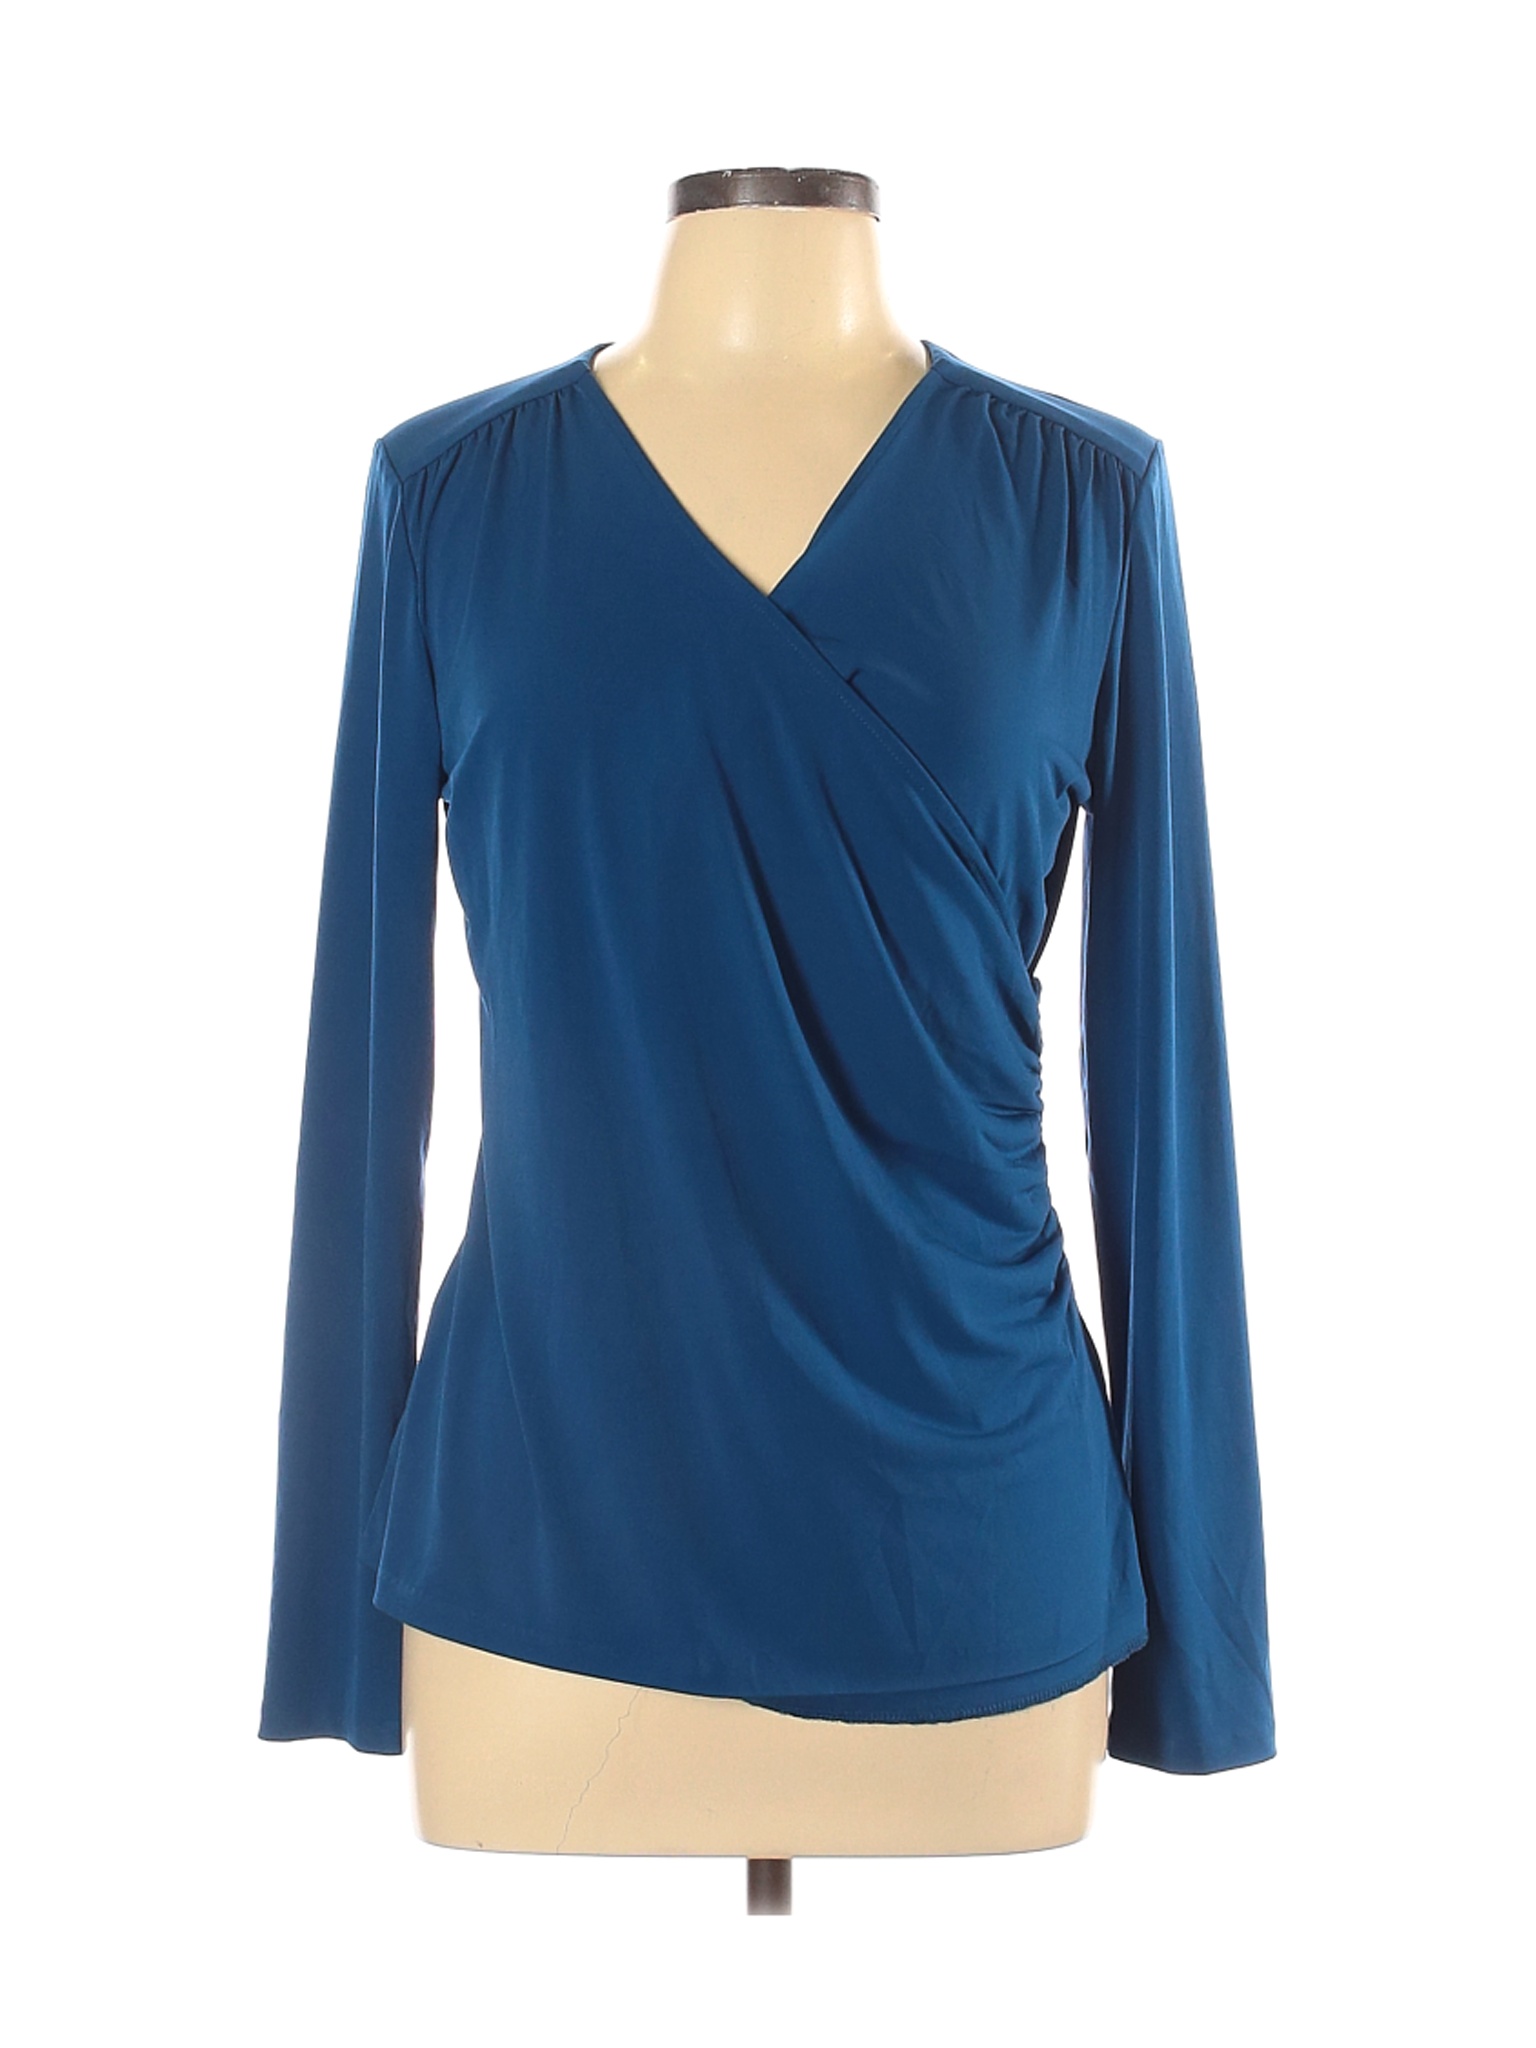 Anne Klein Women Blue Long Sleeve Top L | eBay